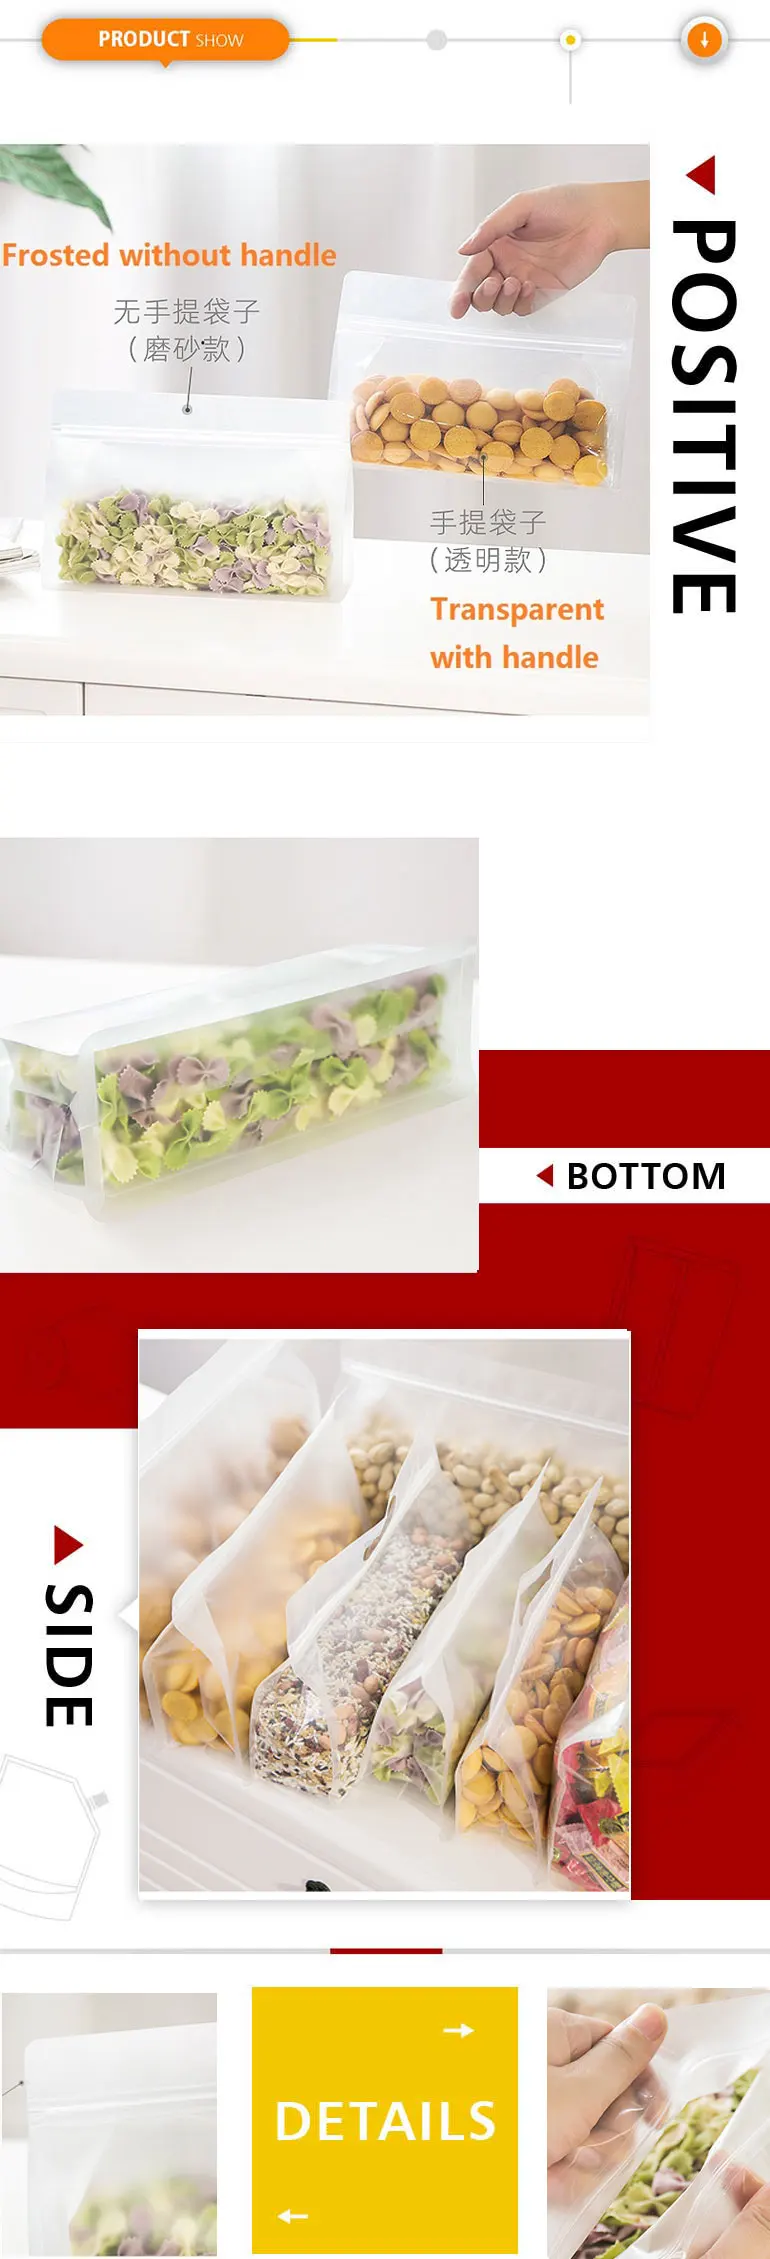 5000 Claro Polietileno Uso Alimentario Congelador bolsas de almacenamiento de plástico fuerte artesanías de embalaje